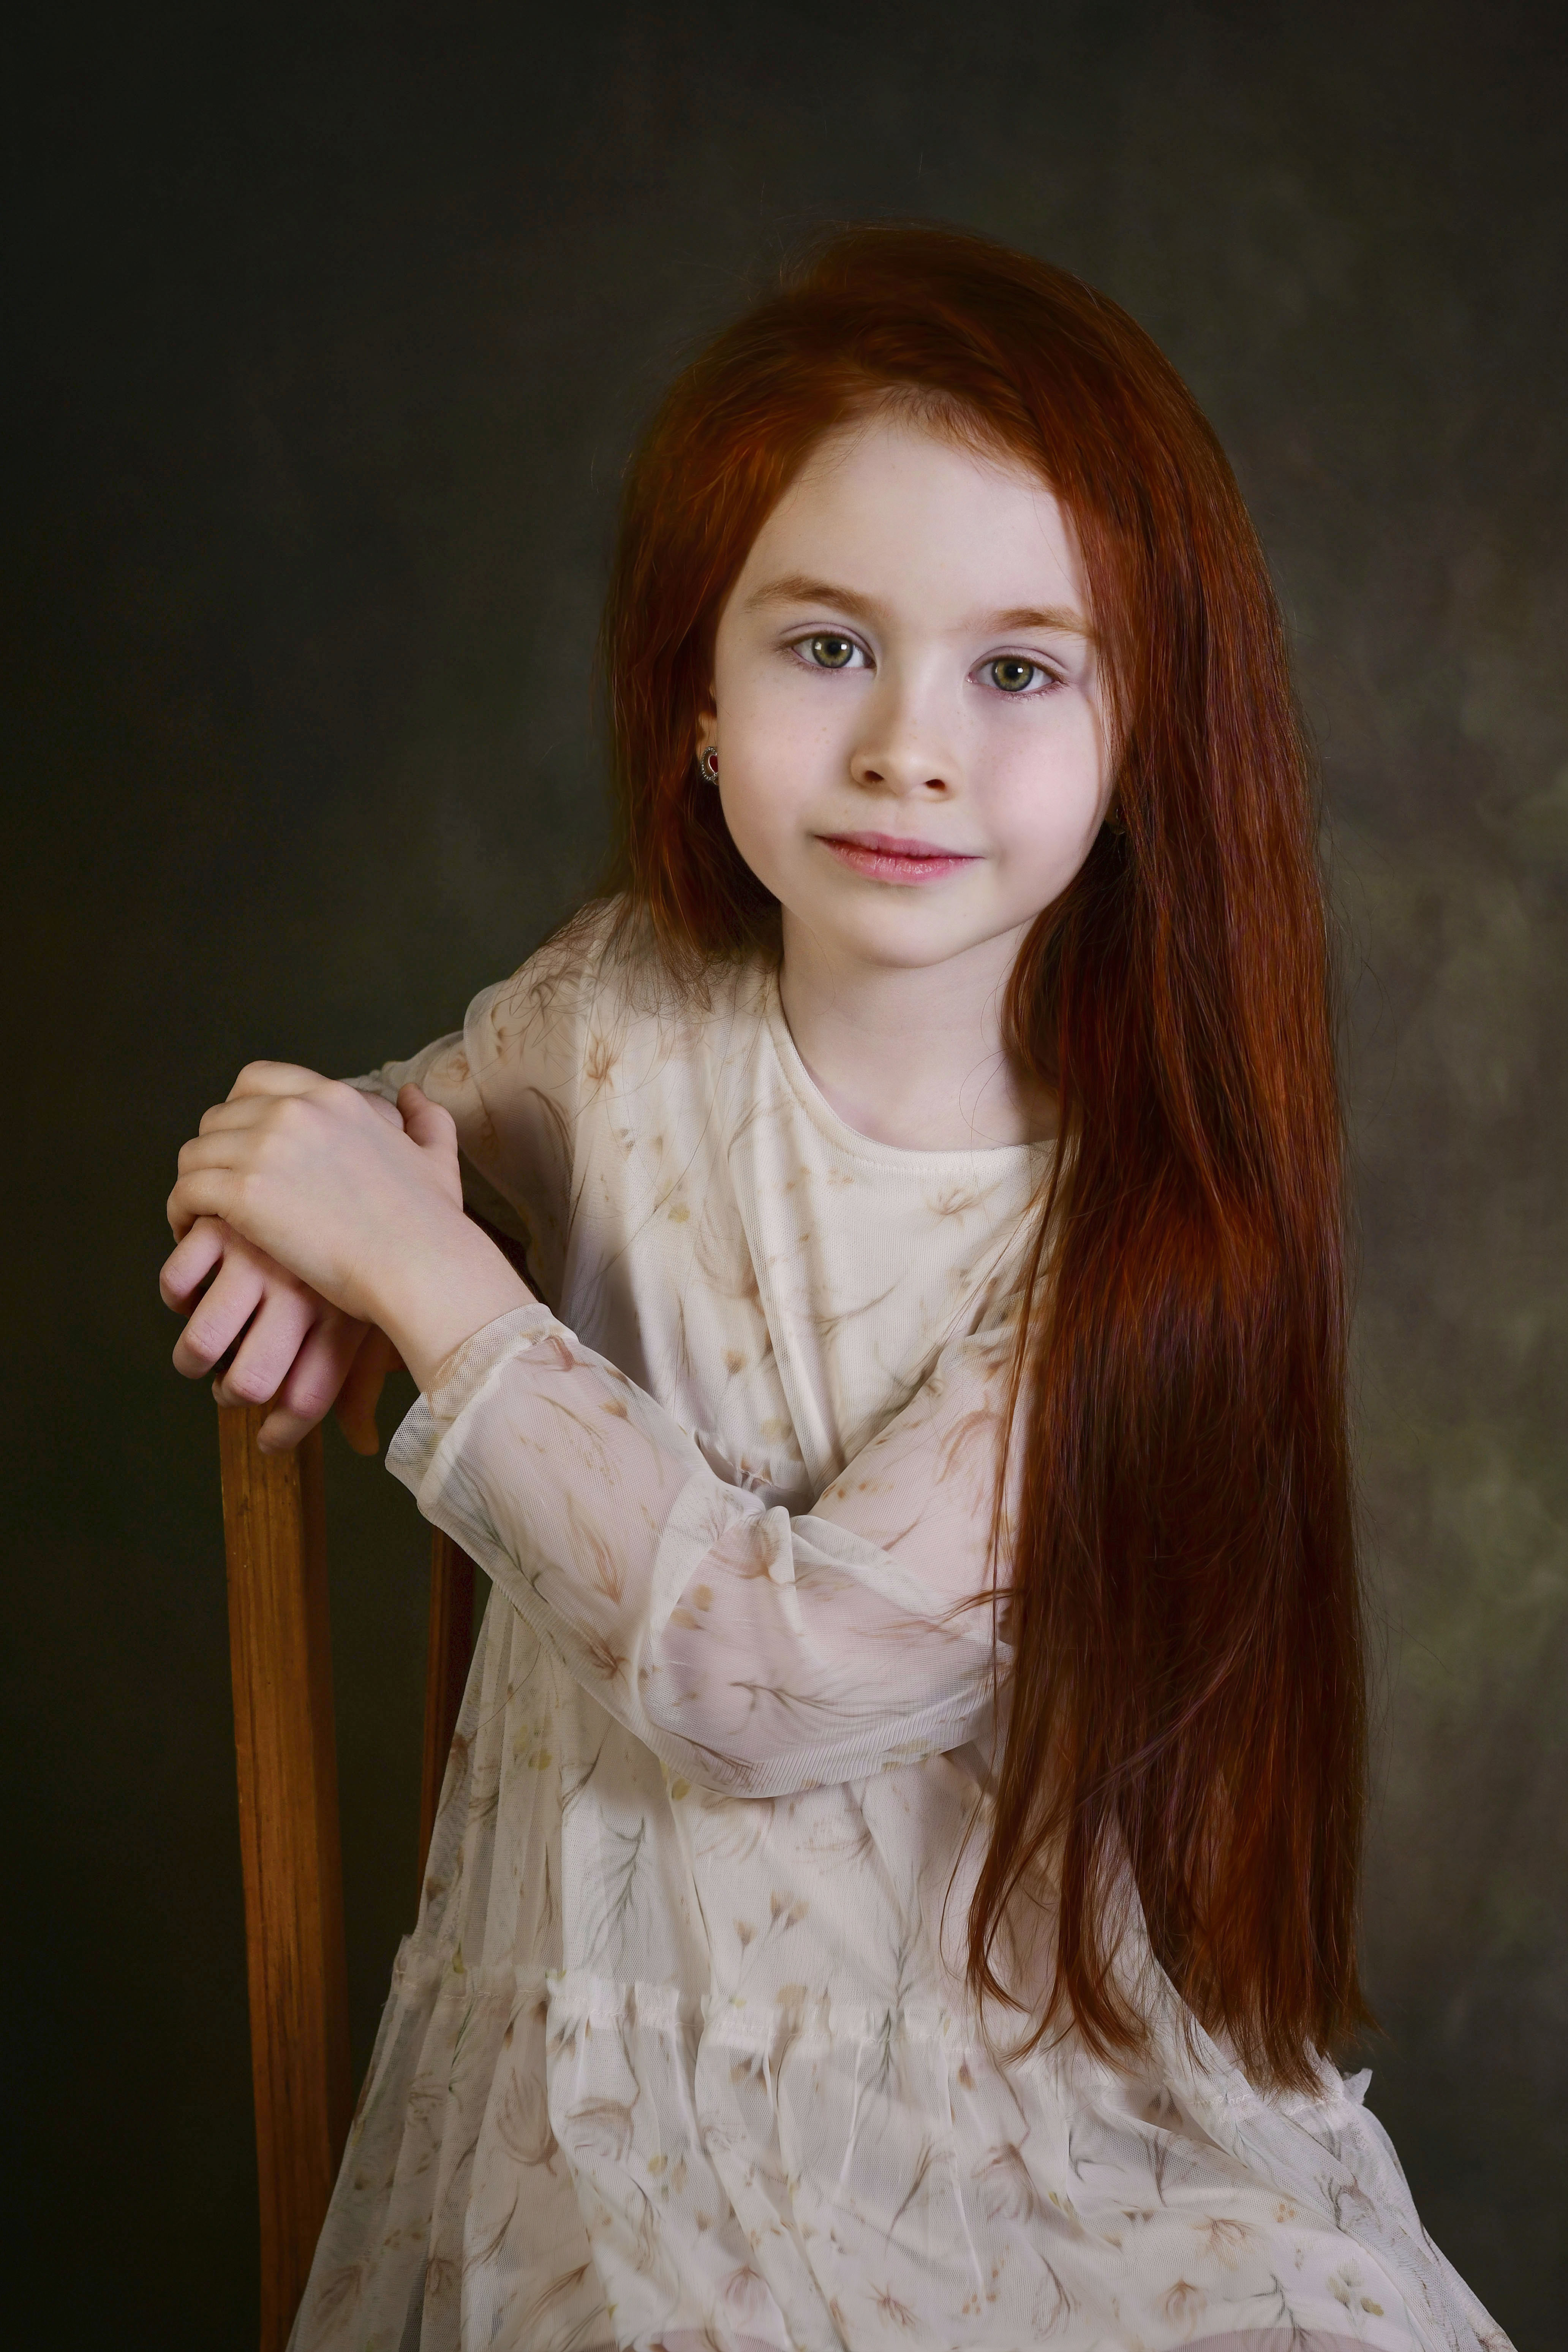 дети, девочка, детский портрет, детская фотография, дети в кадре, детство, художественная фотография, Ирина Ефимова